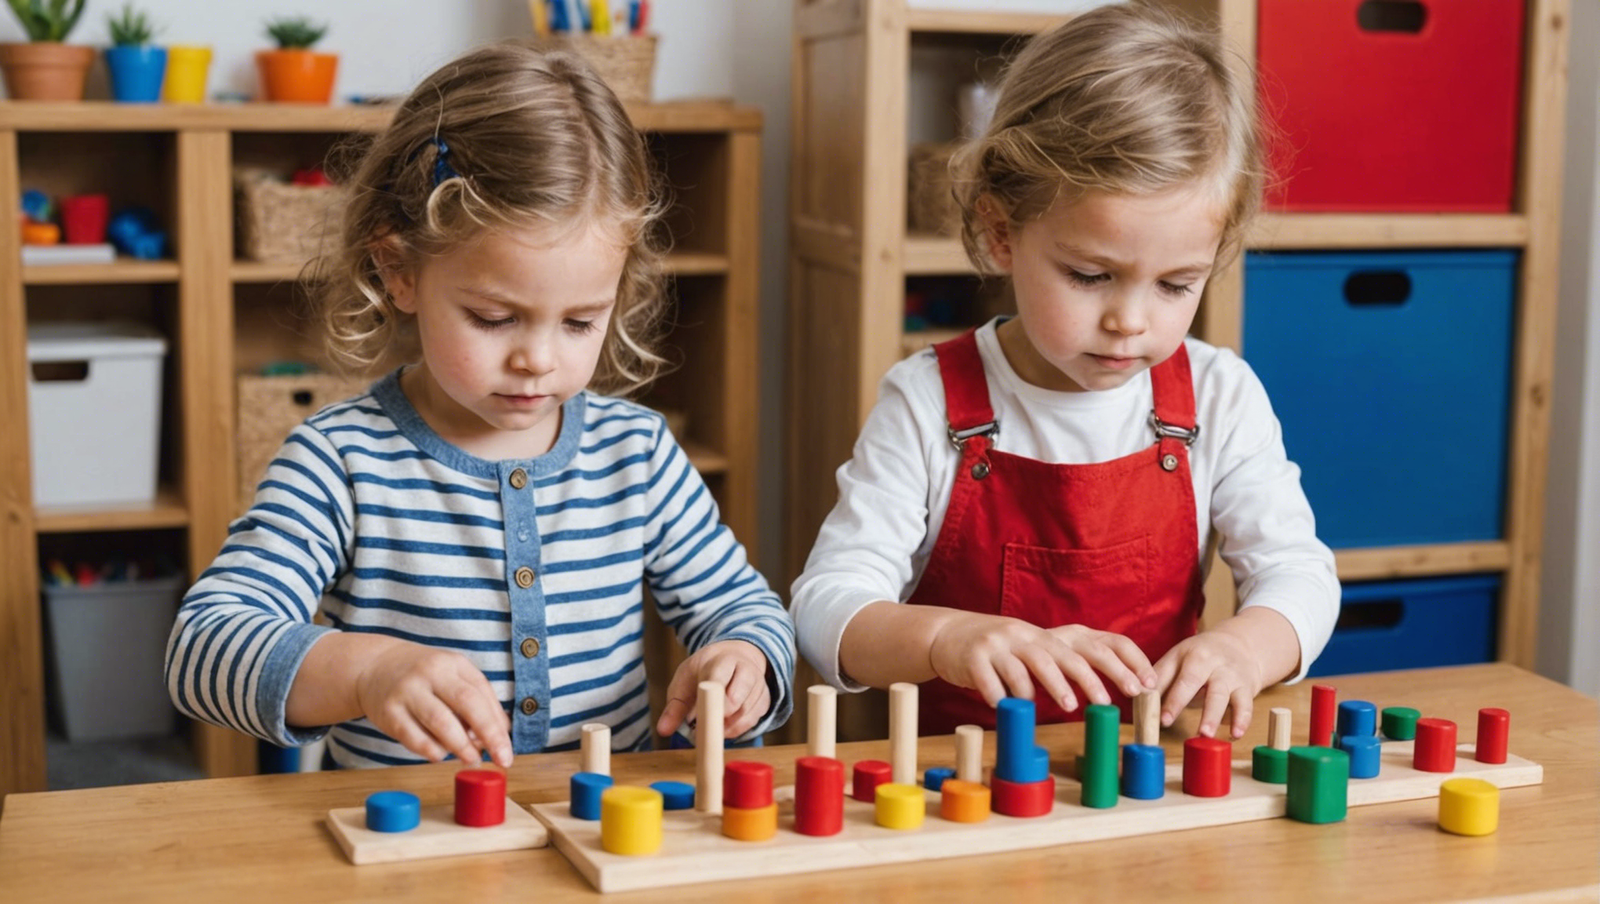 découvrez comment la méthode montessori stimule la curiosité et l'exploration chez les enfants, favorisant un apprentissage enrichissant et autonome.